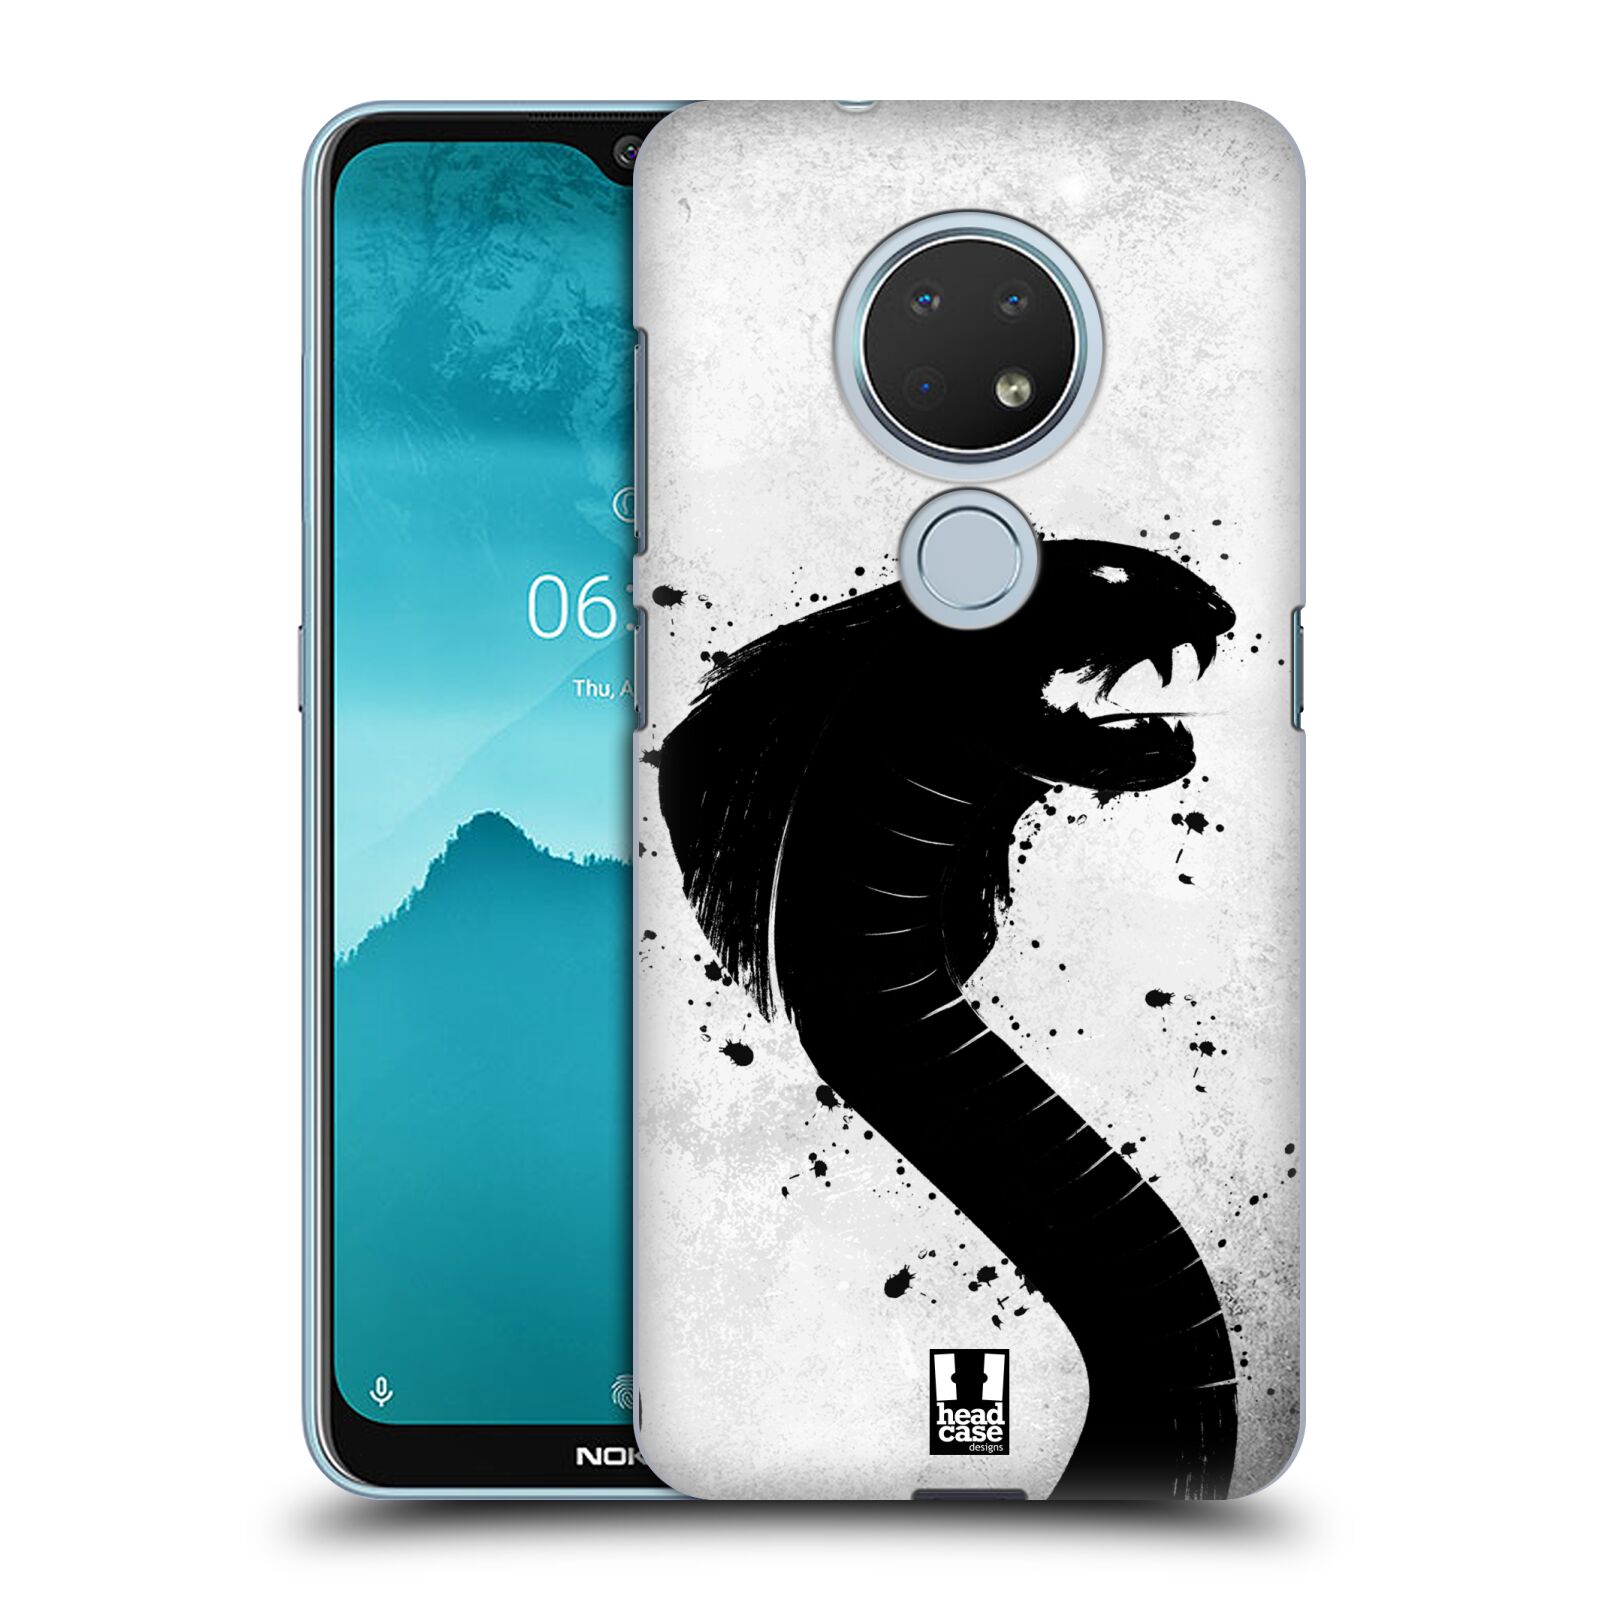 Pouzdro na mobil Nokia 6.2 - HEAD CASE - vzor Kresba tuš zvíře had kobra